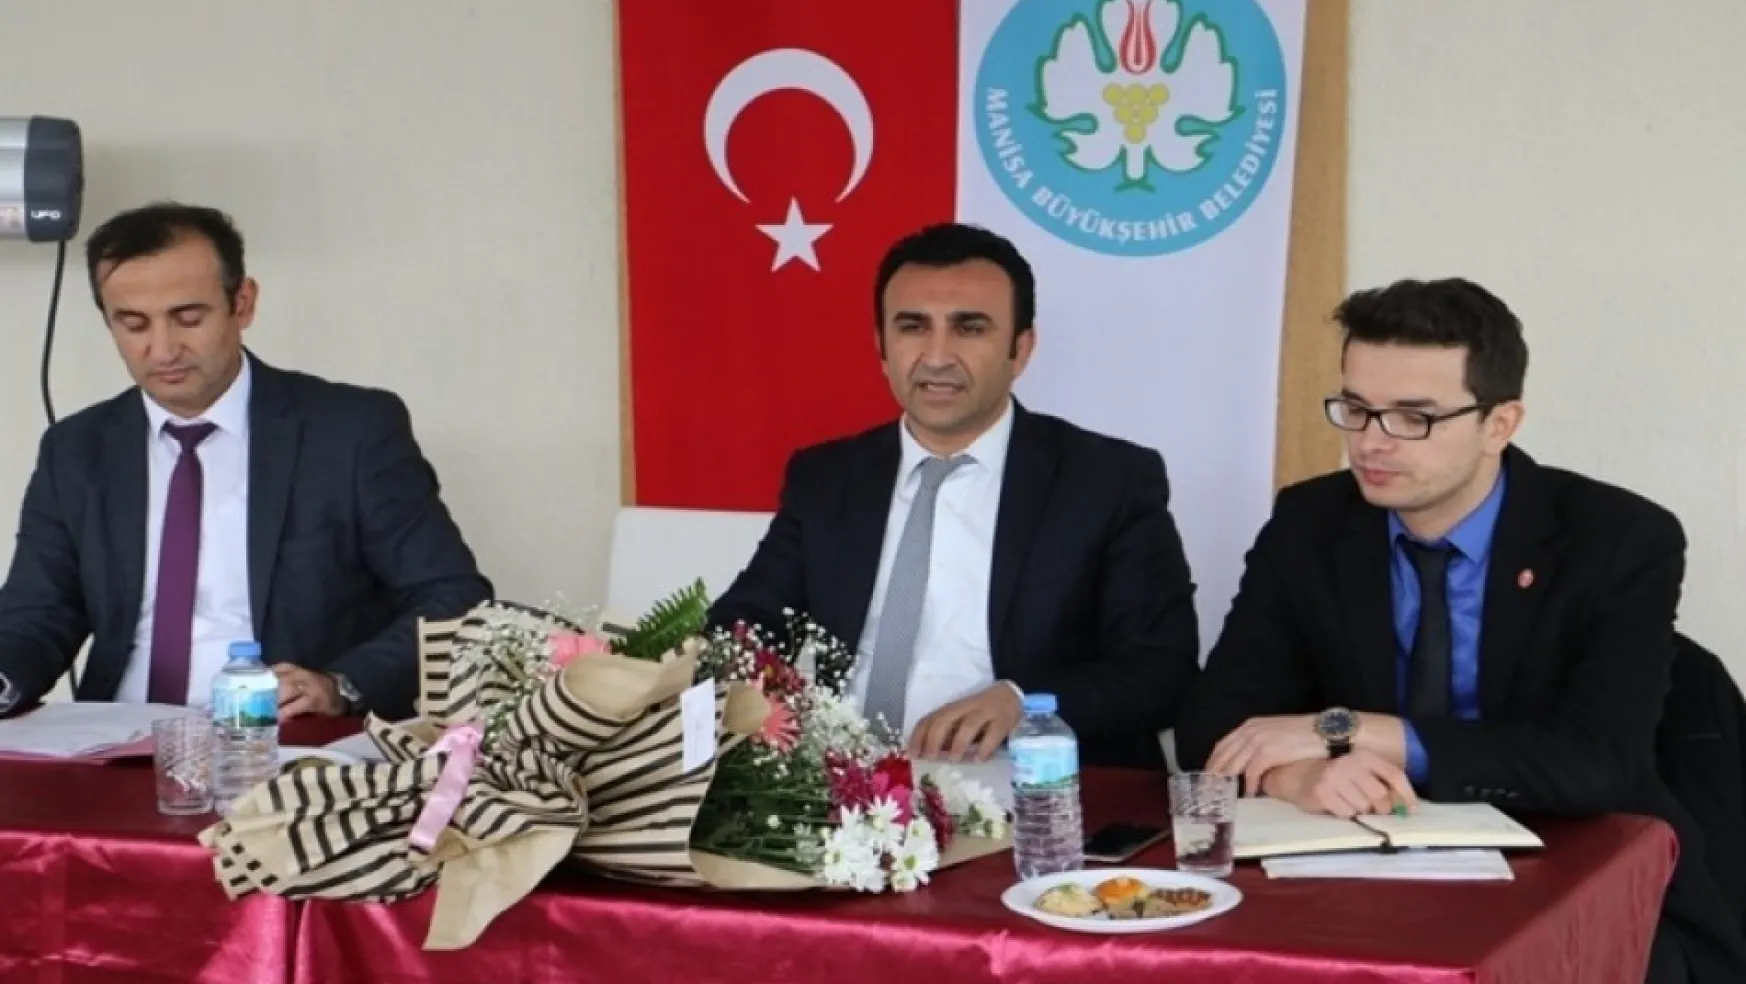 Sağlık İşleri Dairesi Başkanı Talip Akbaş, El birliği ve ortaklaşa çalışılması gerektiğini belirtti